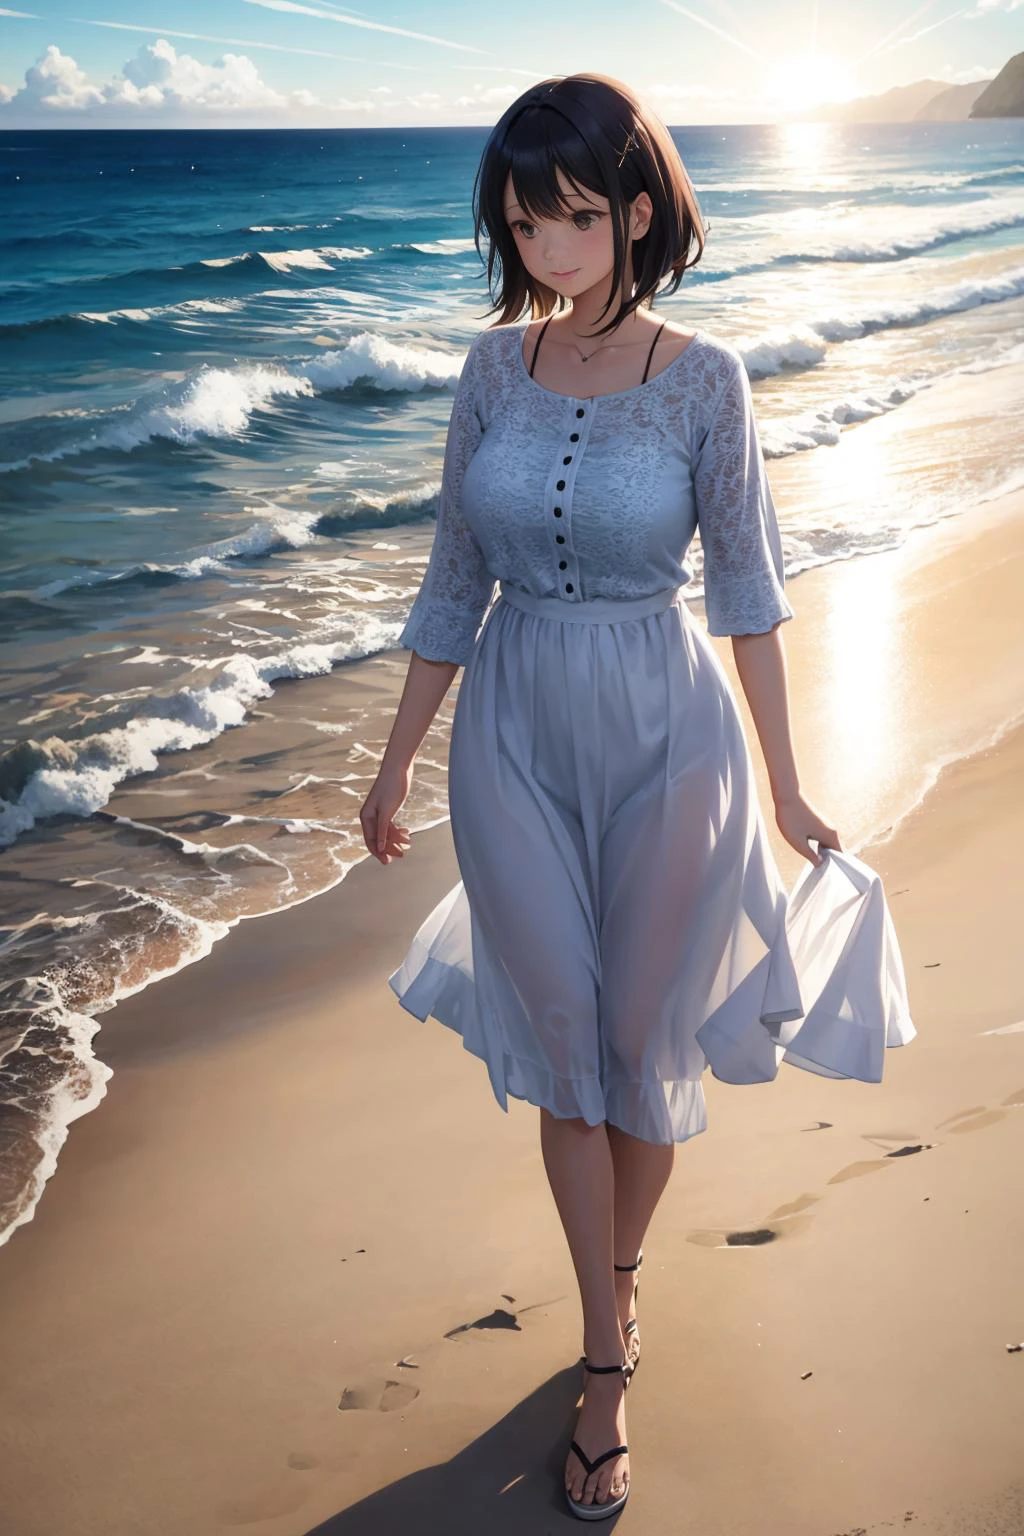 امرأة تستمتع بنزهة على الشاطئ. العمر 35. ضوء الشمس ينعكس على المحيط. الضوء الحجمي. انعكاس, الانكسار.